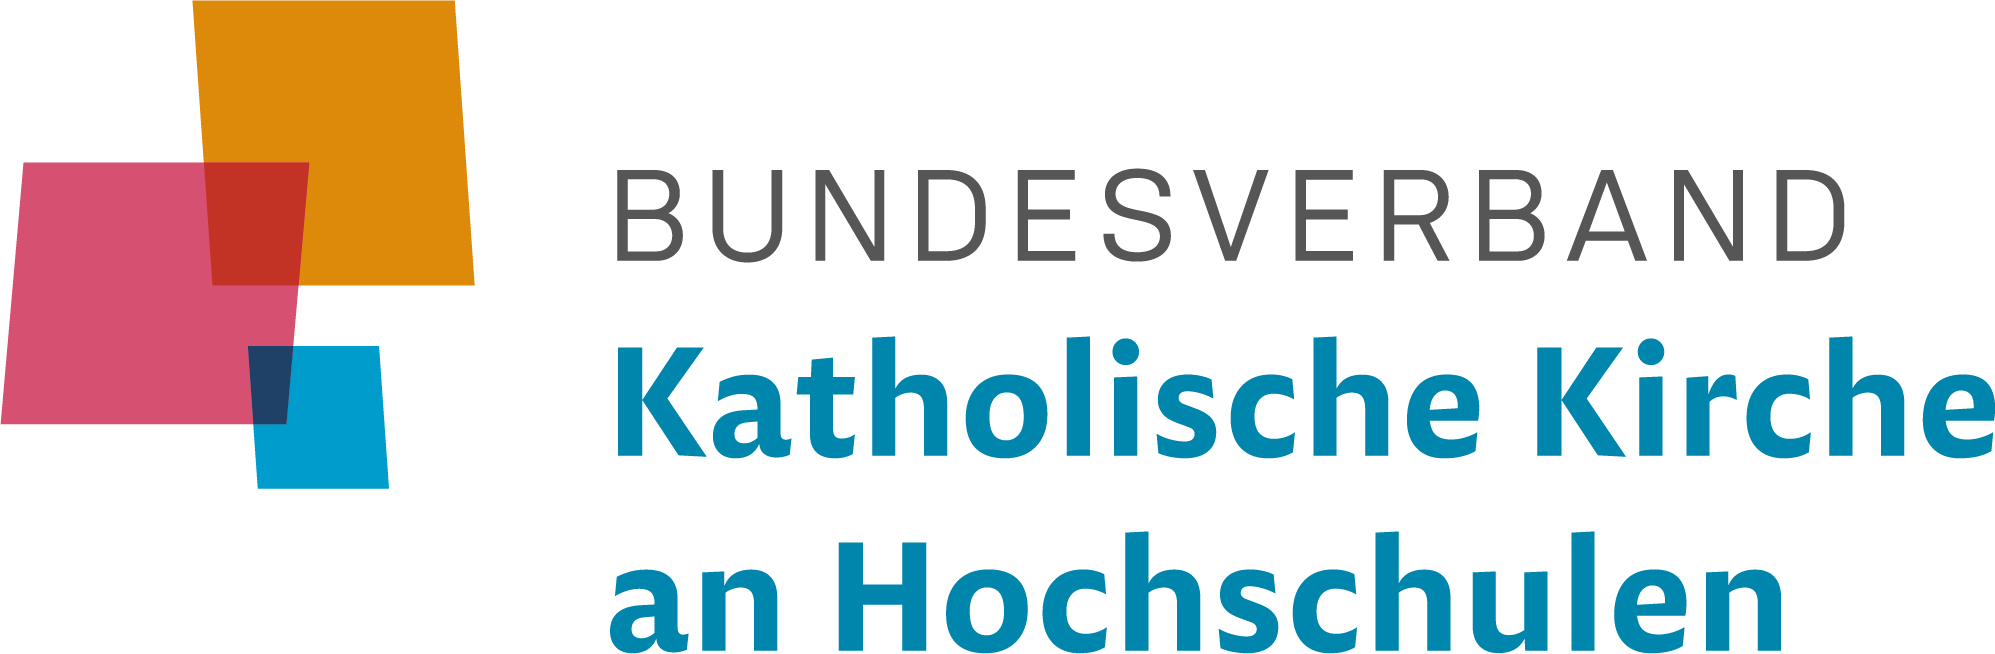 Bundesverband Katholische Kirche an Hochschulen